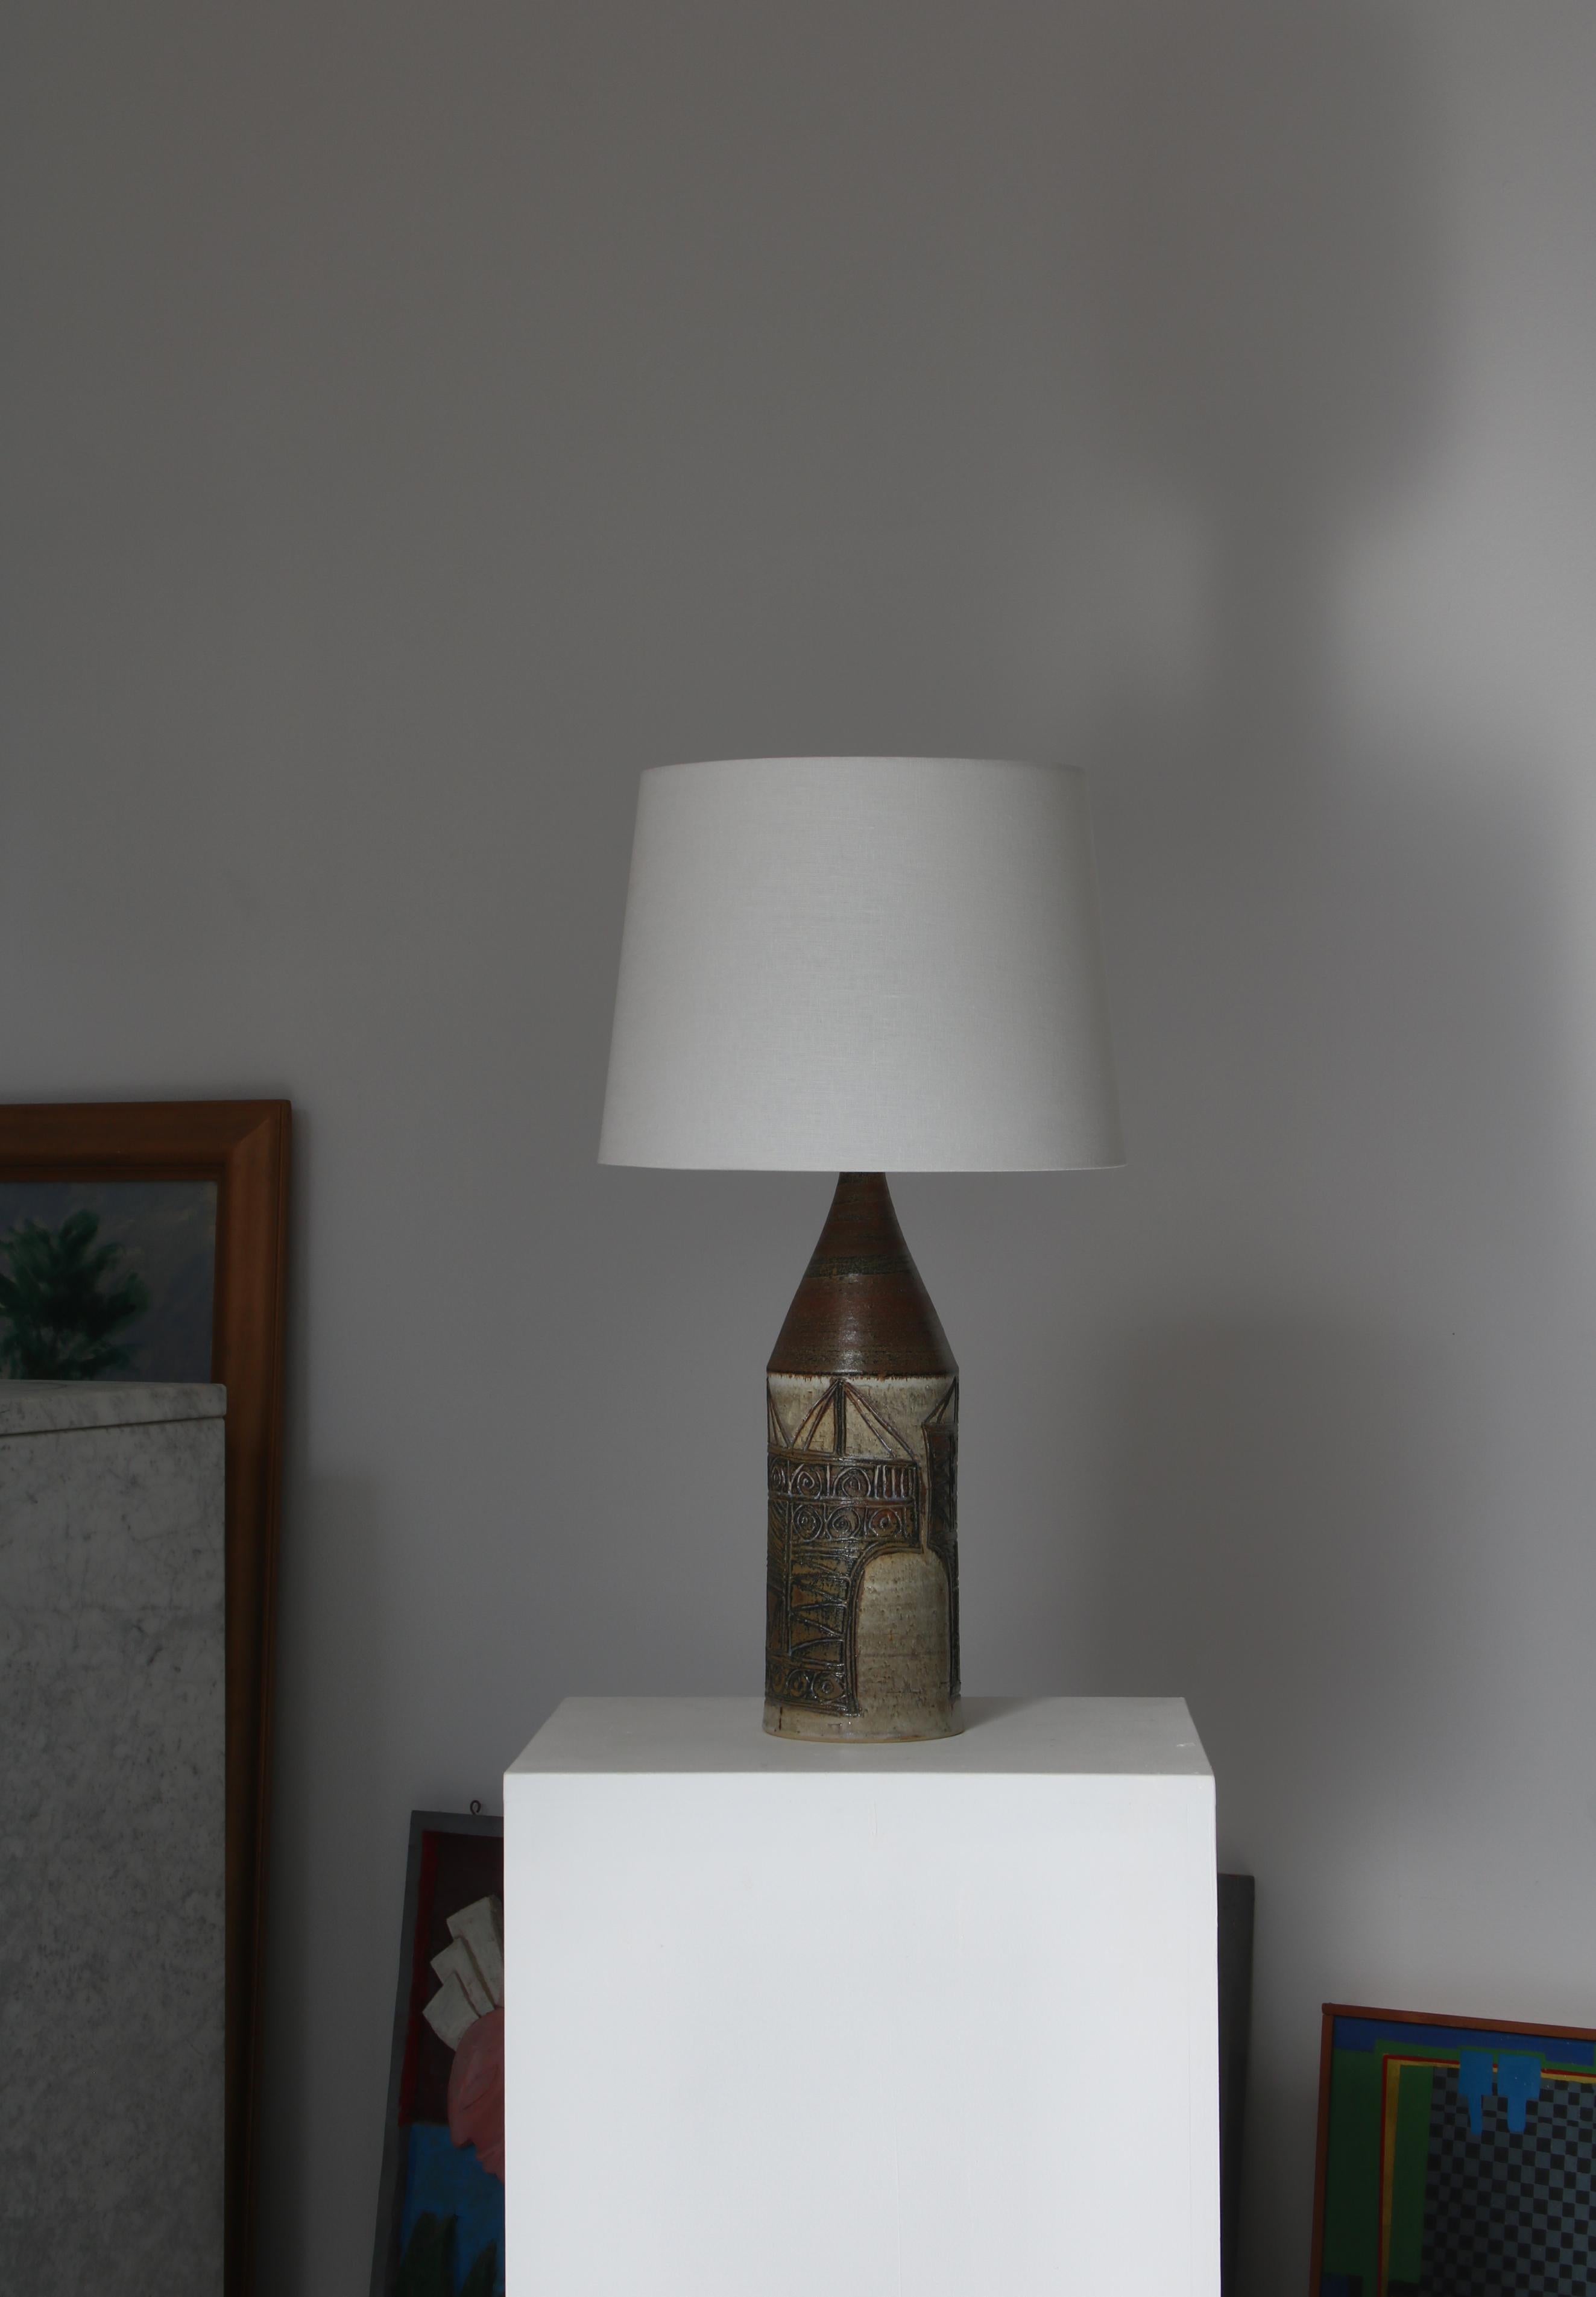 Ein wunderbarer skandinavisch-moderner Lampenfuß, der von Dagny und Finn Hald in den 1950er Jahren in ihrer eigenen Keramikwerkstatt in Soon, Norwegen, hergestellt wurde. Die Lampe ist von Hand mit eingeritzten abstrakten Motiven verziert. Unten